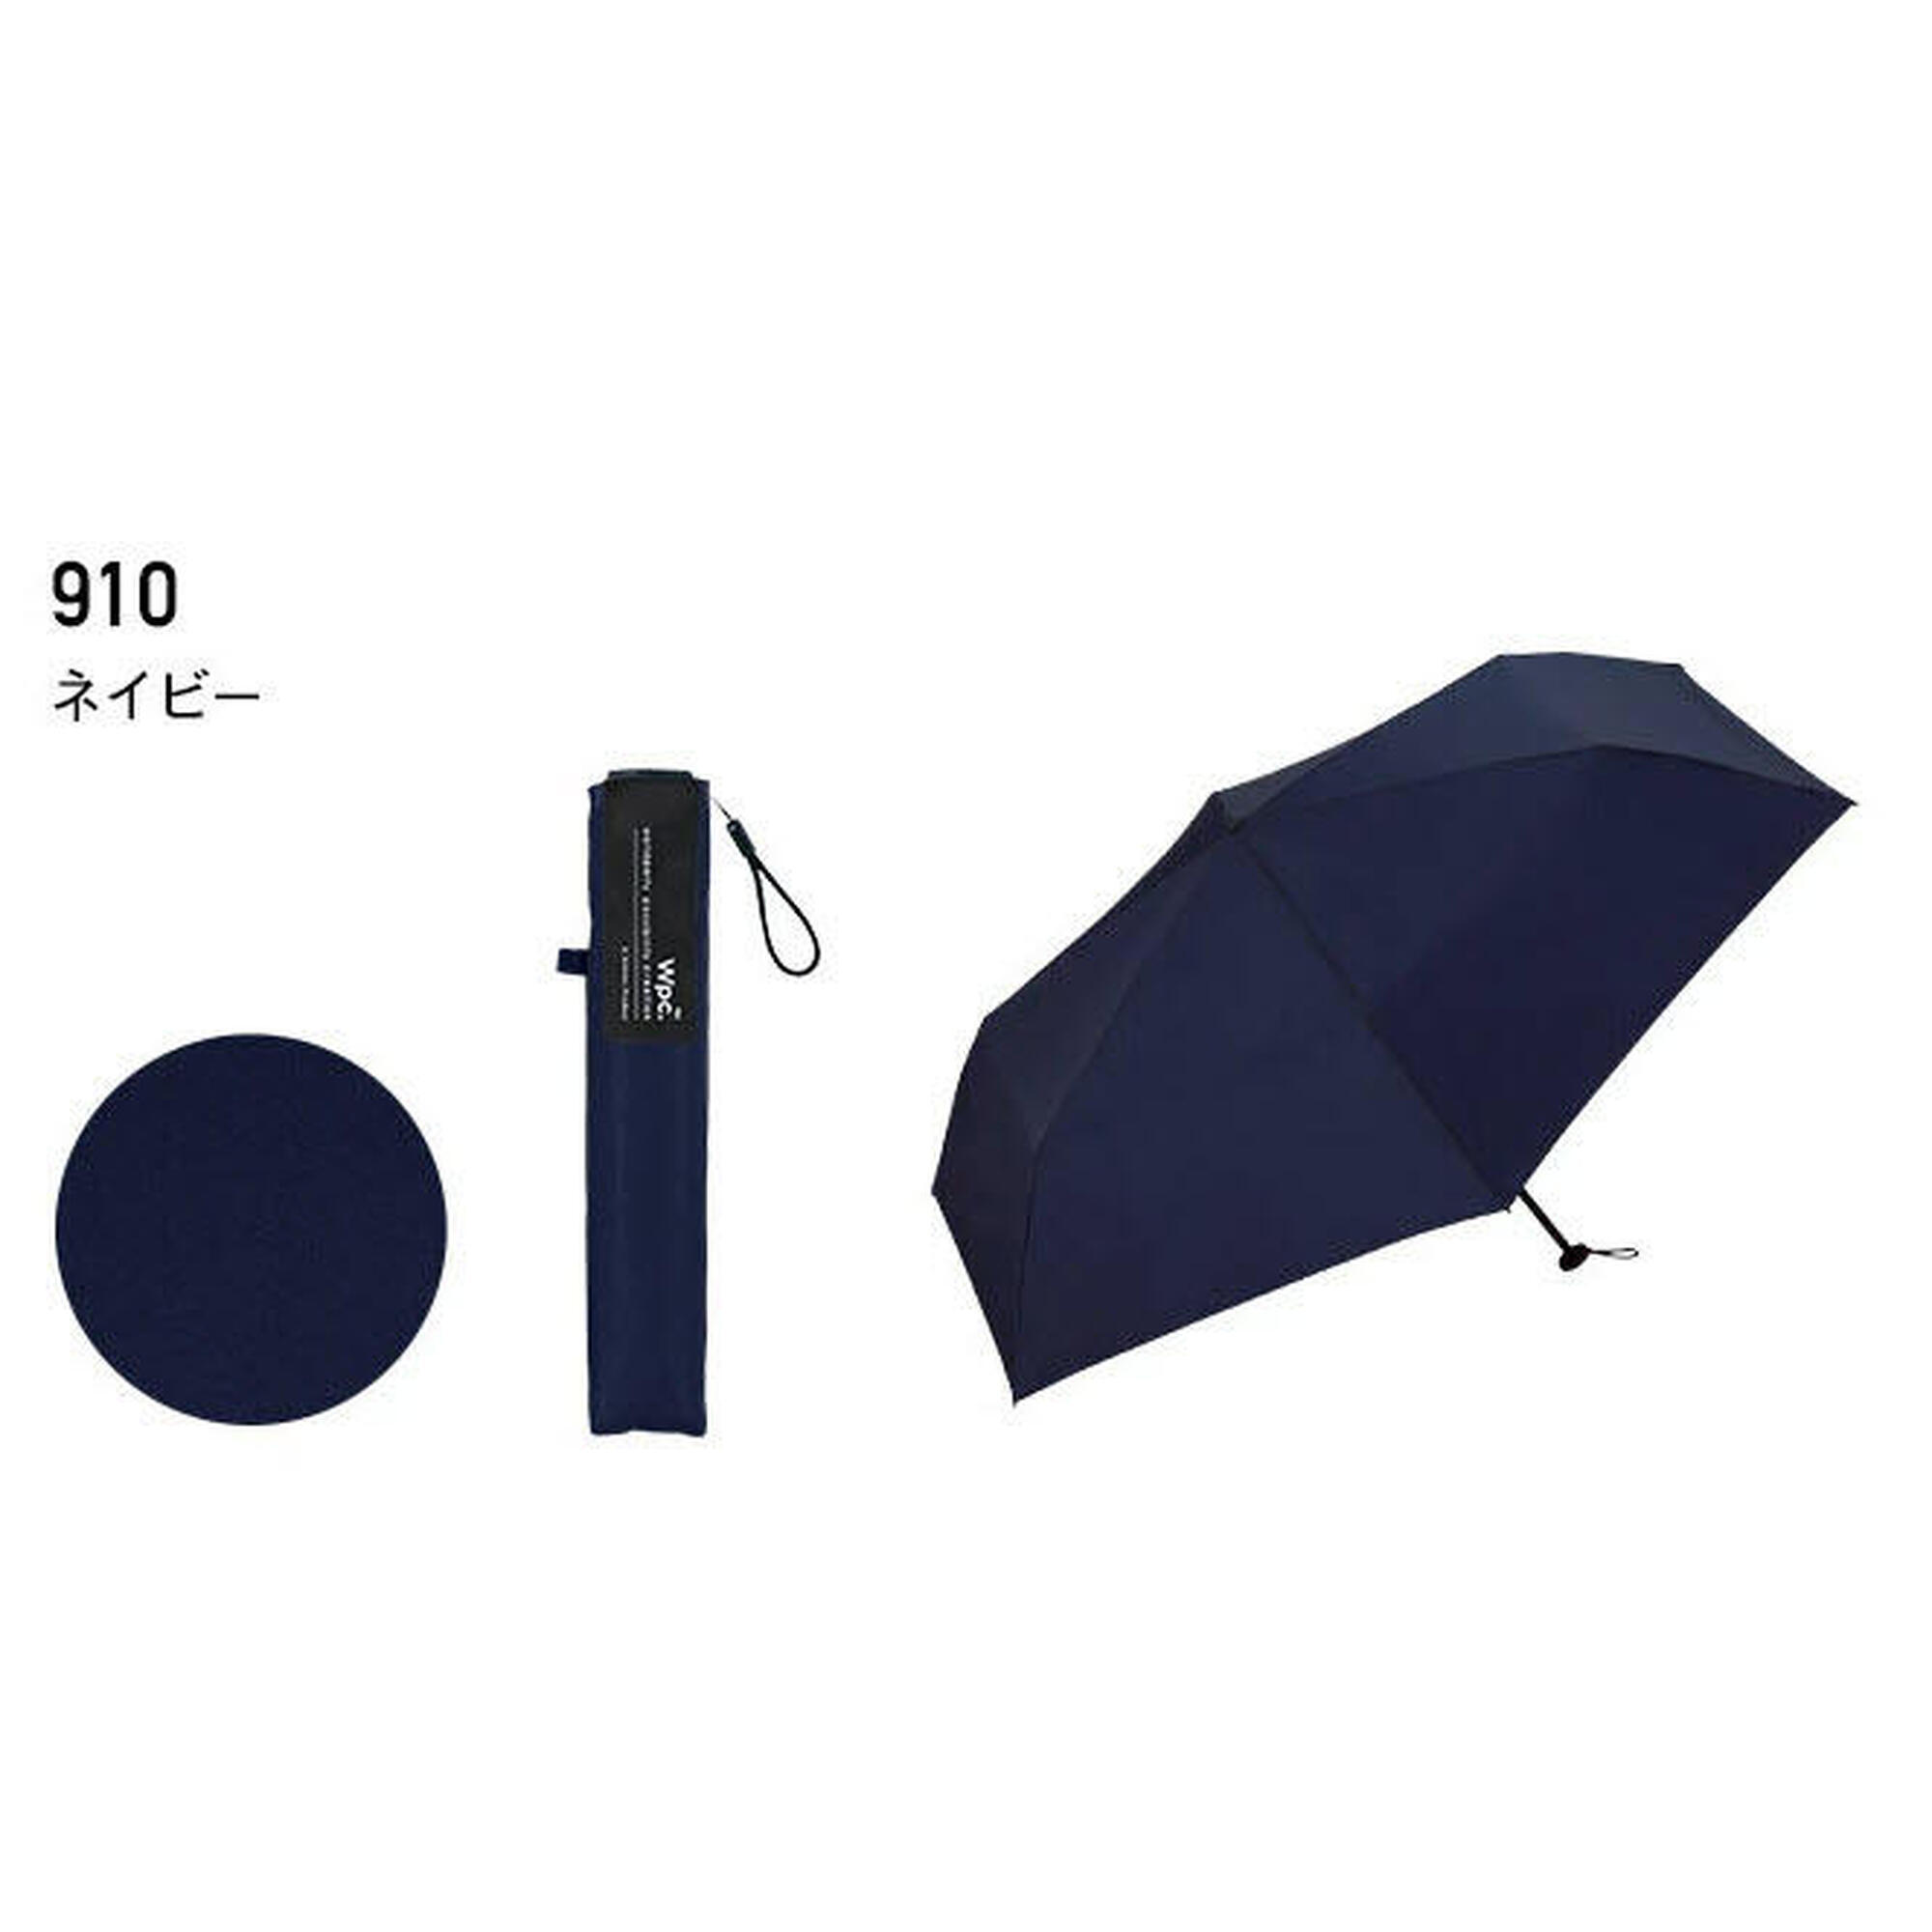 UX系列AIR-Light超輕防紫外光縮骨雨傘 - 深藍色